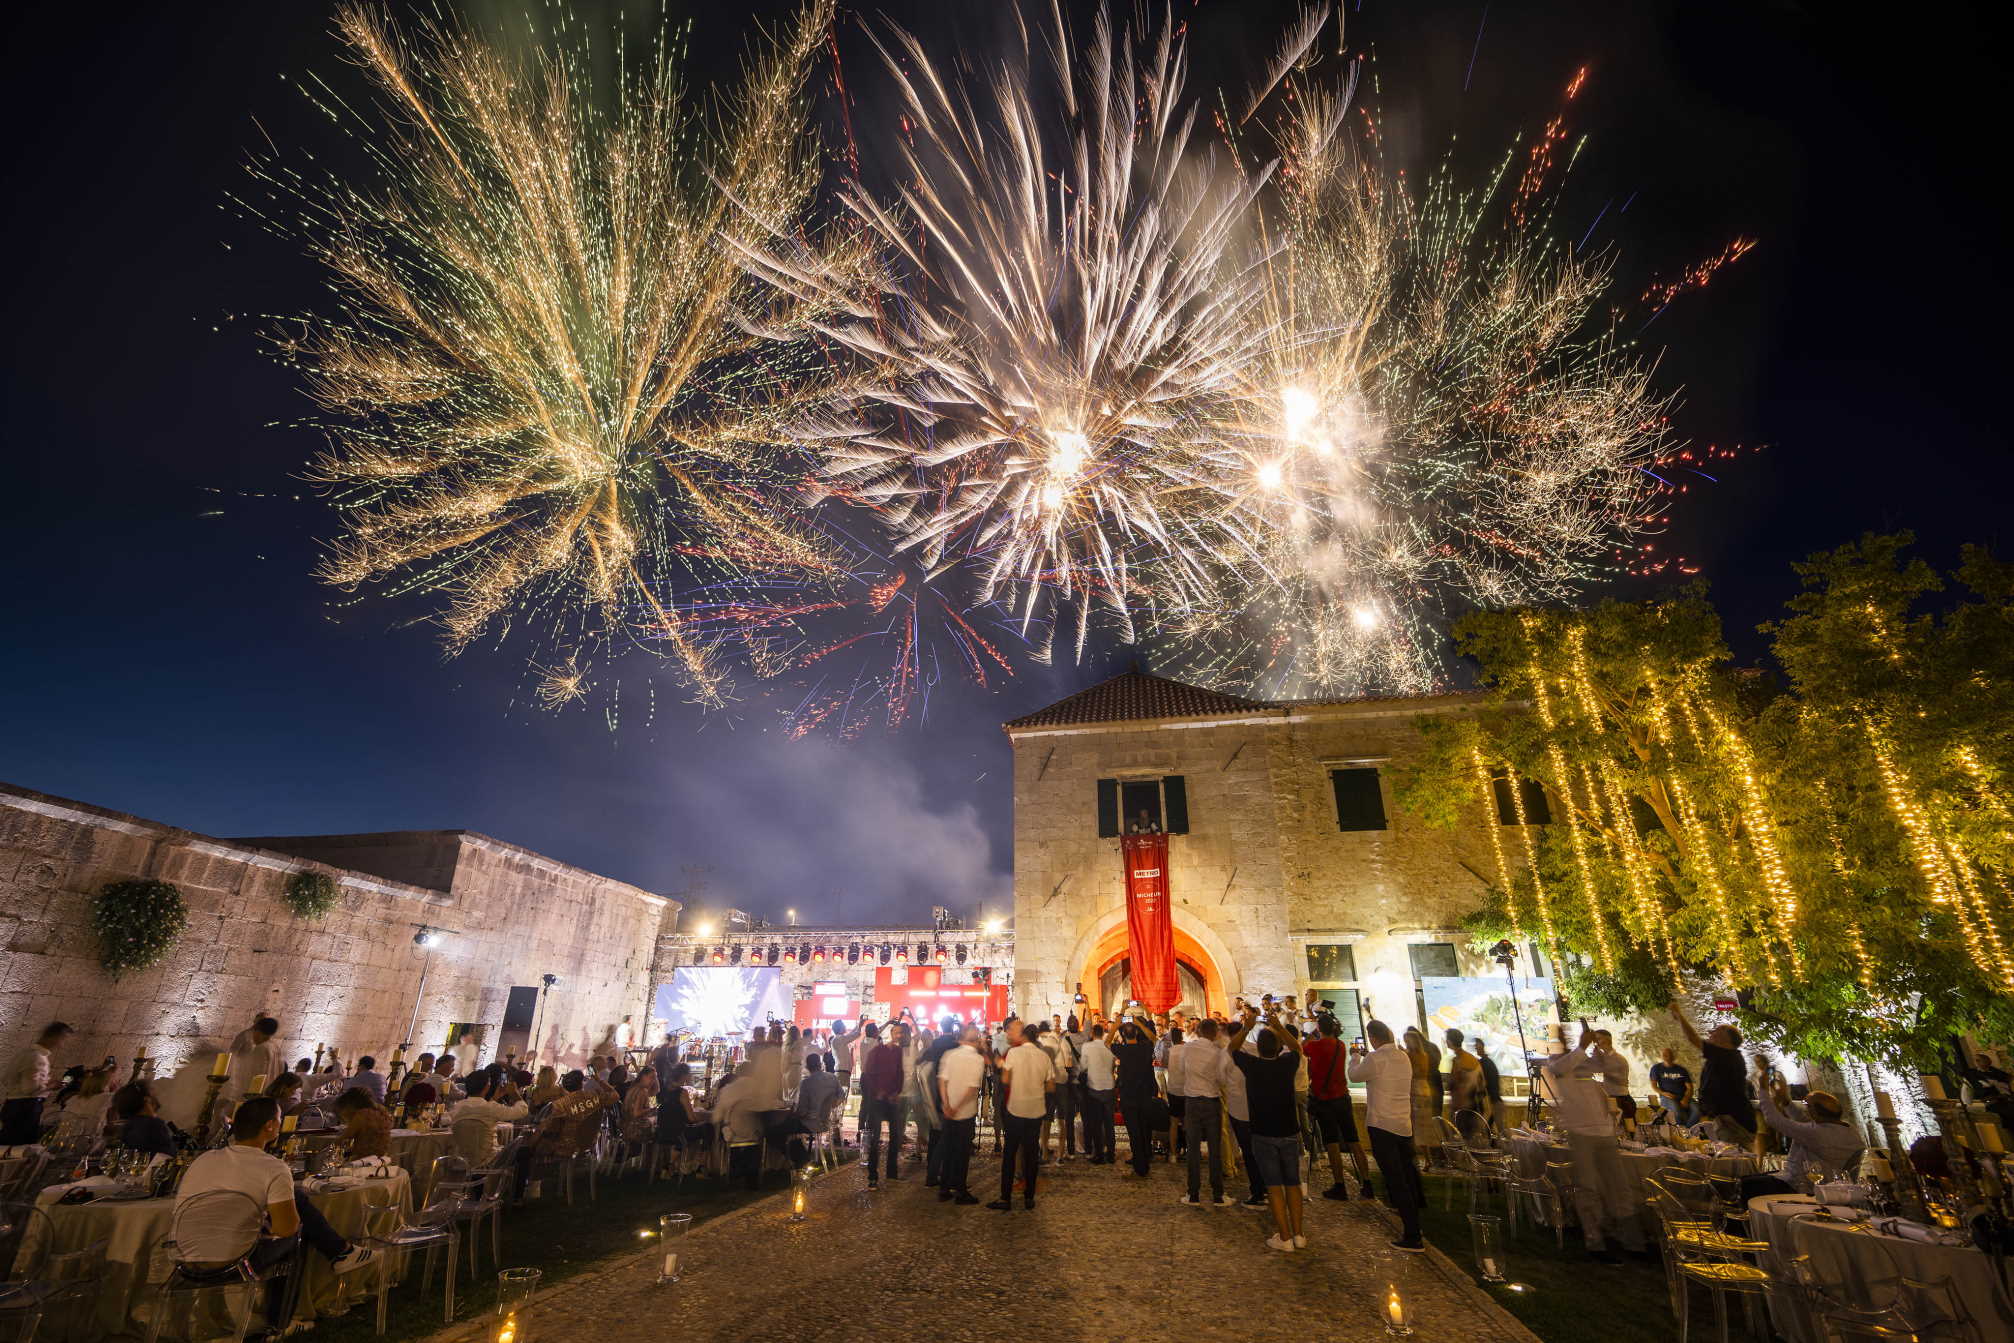 Održana je svečanost uručenja Michelin priznanja za 2022. najboljim hrvatskim restoranima